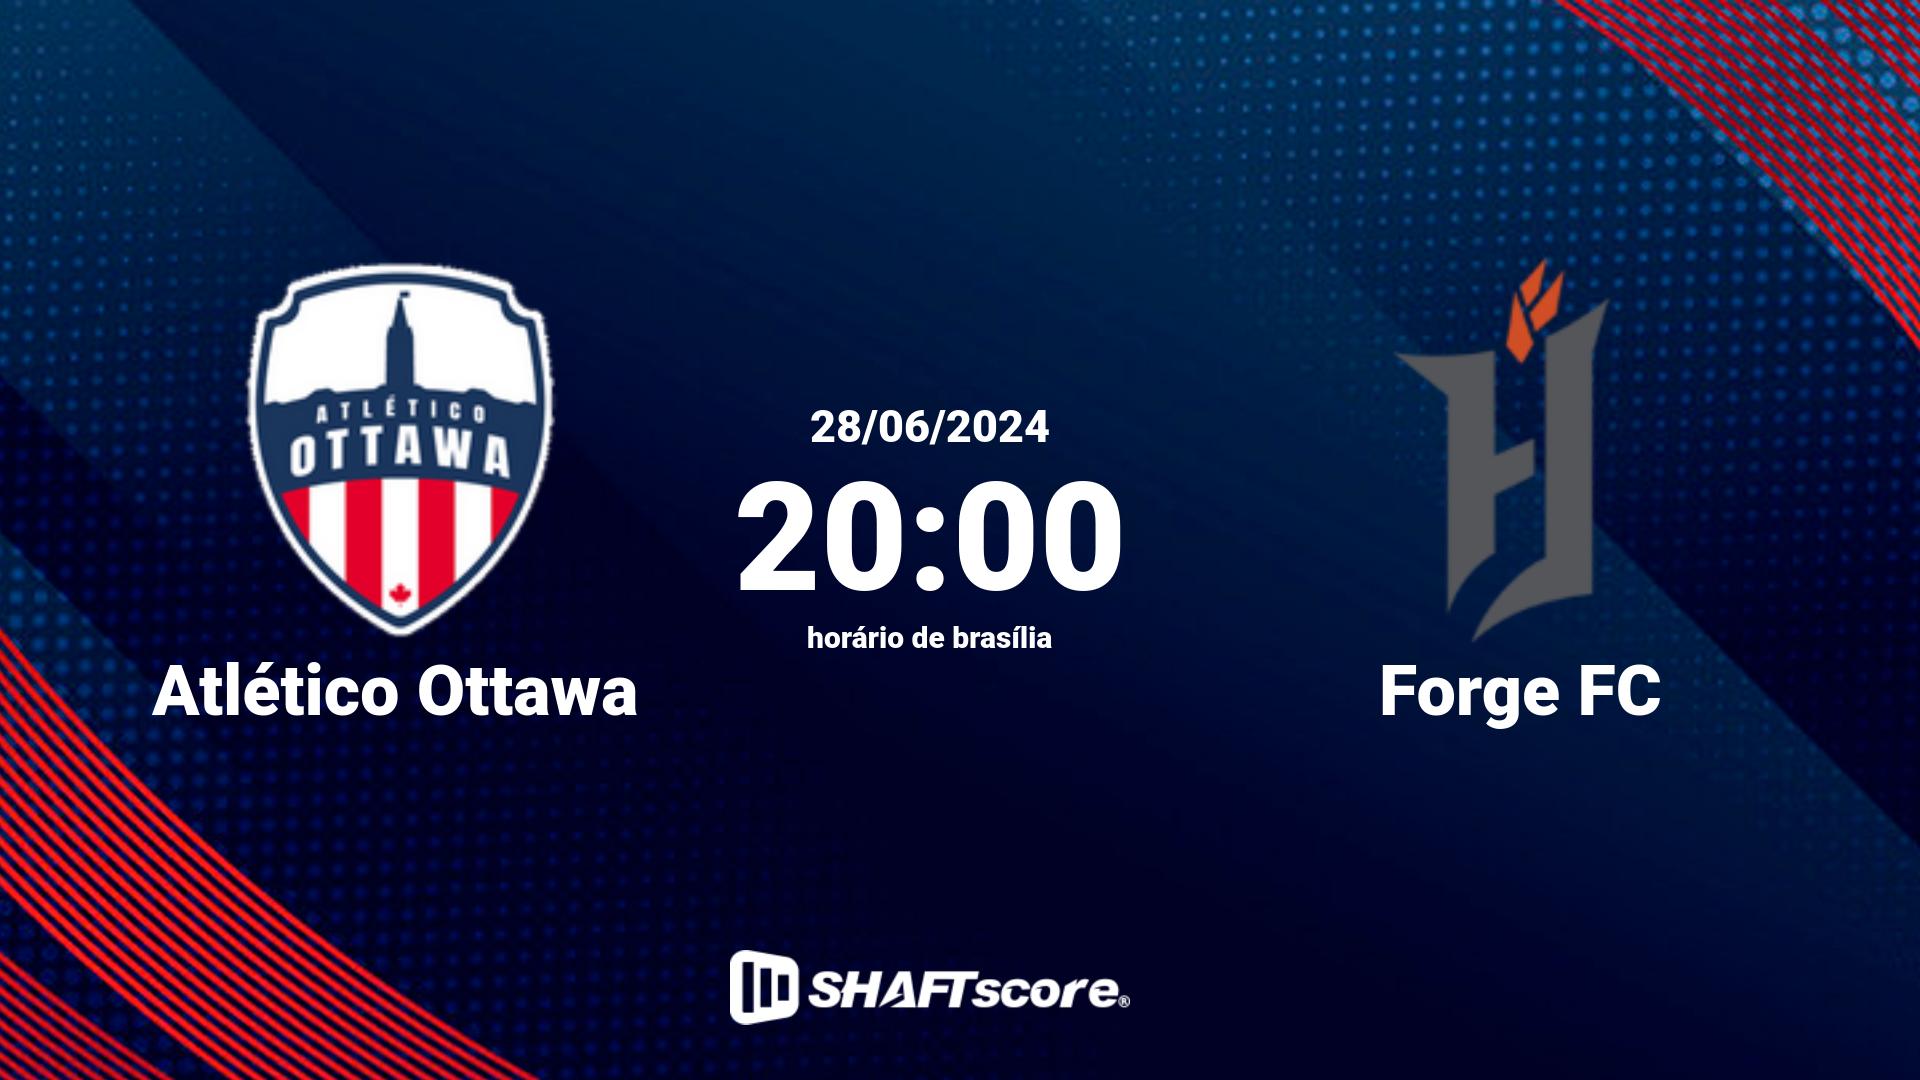 Estatísticas do jogo Atlético Ottawa vs Forge FC 28.06 20:00